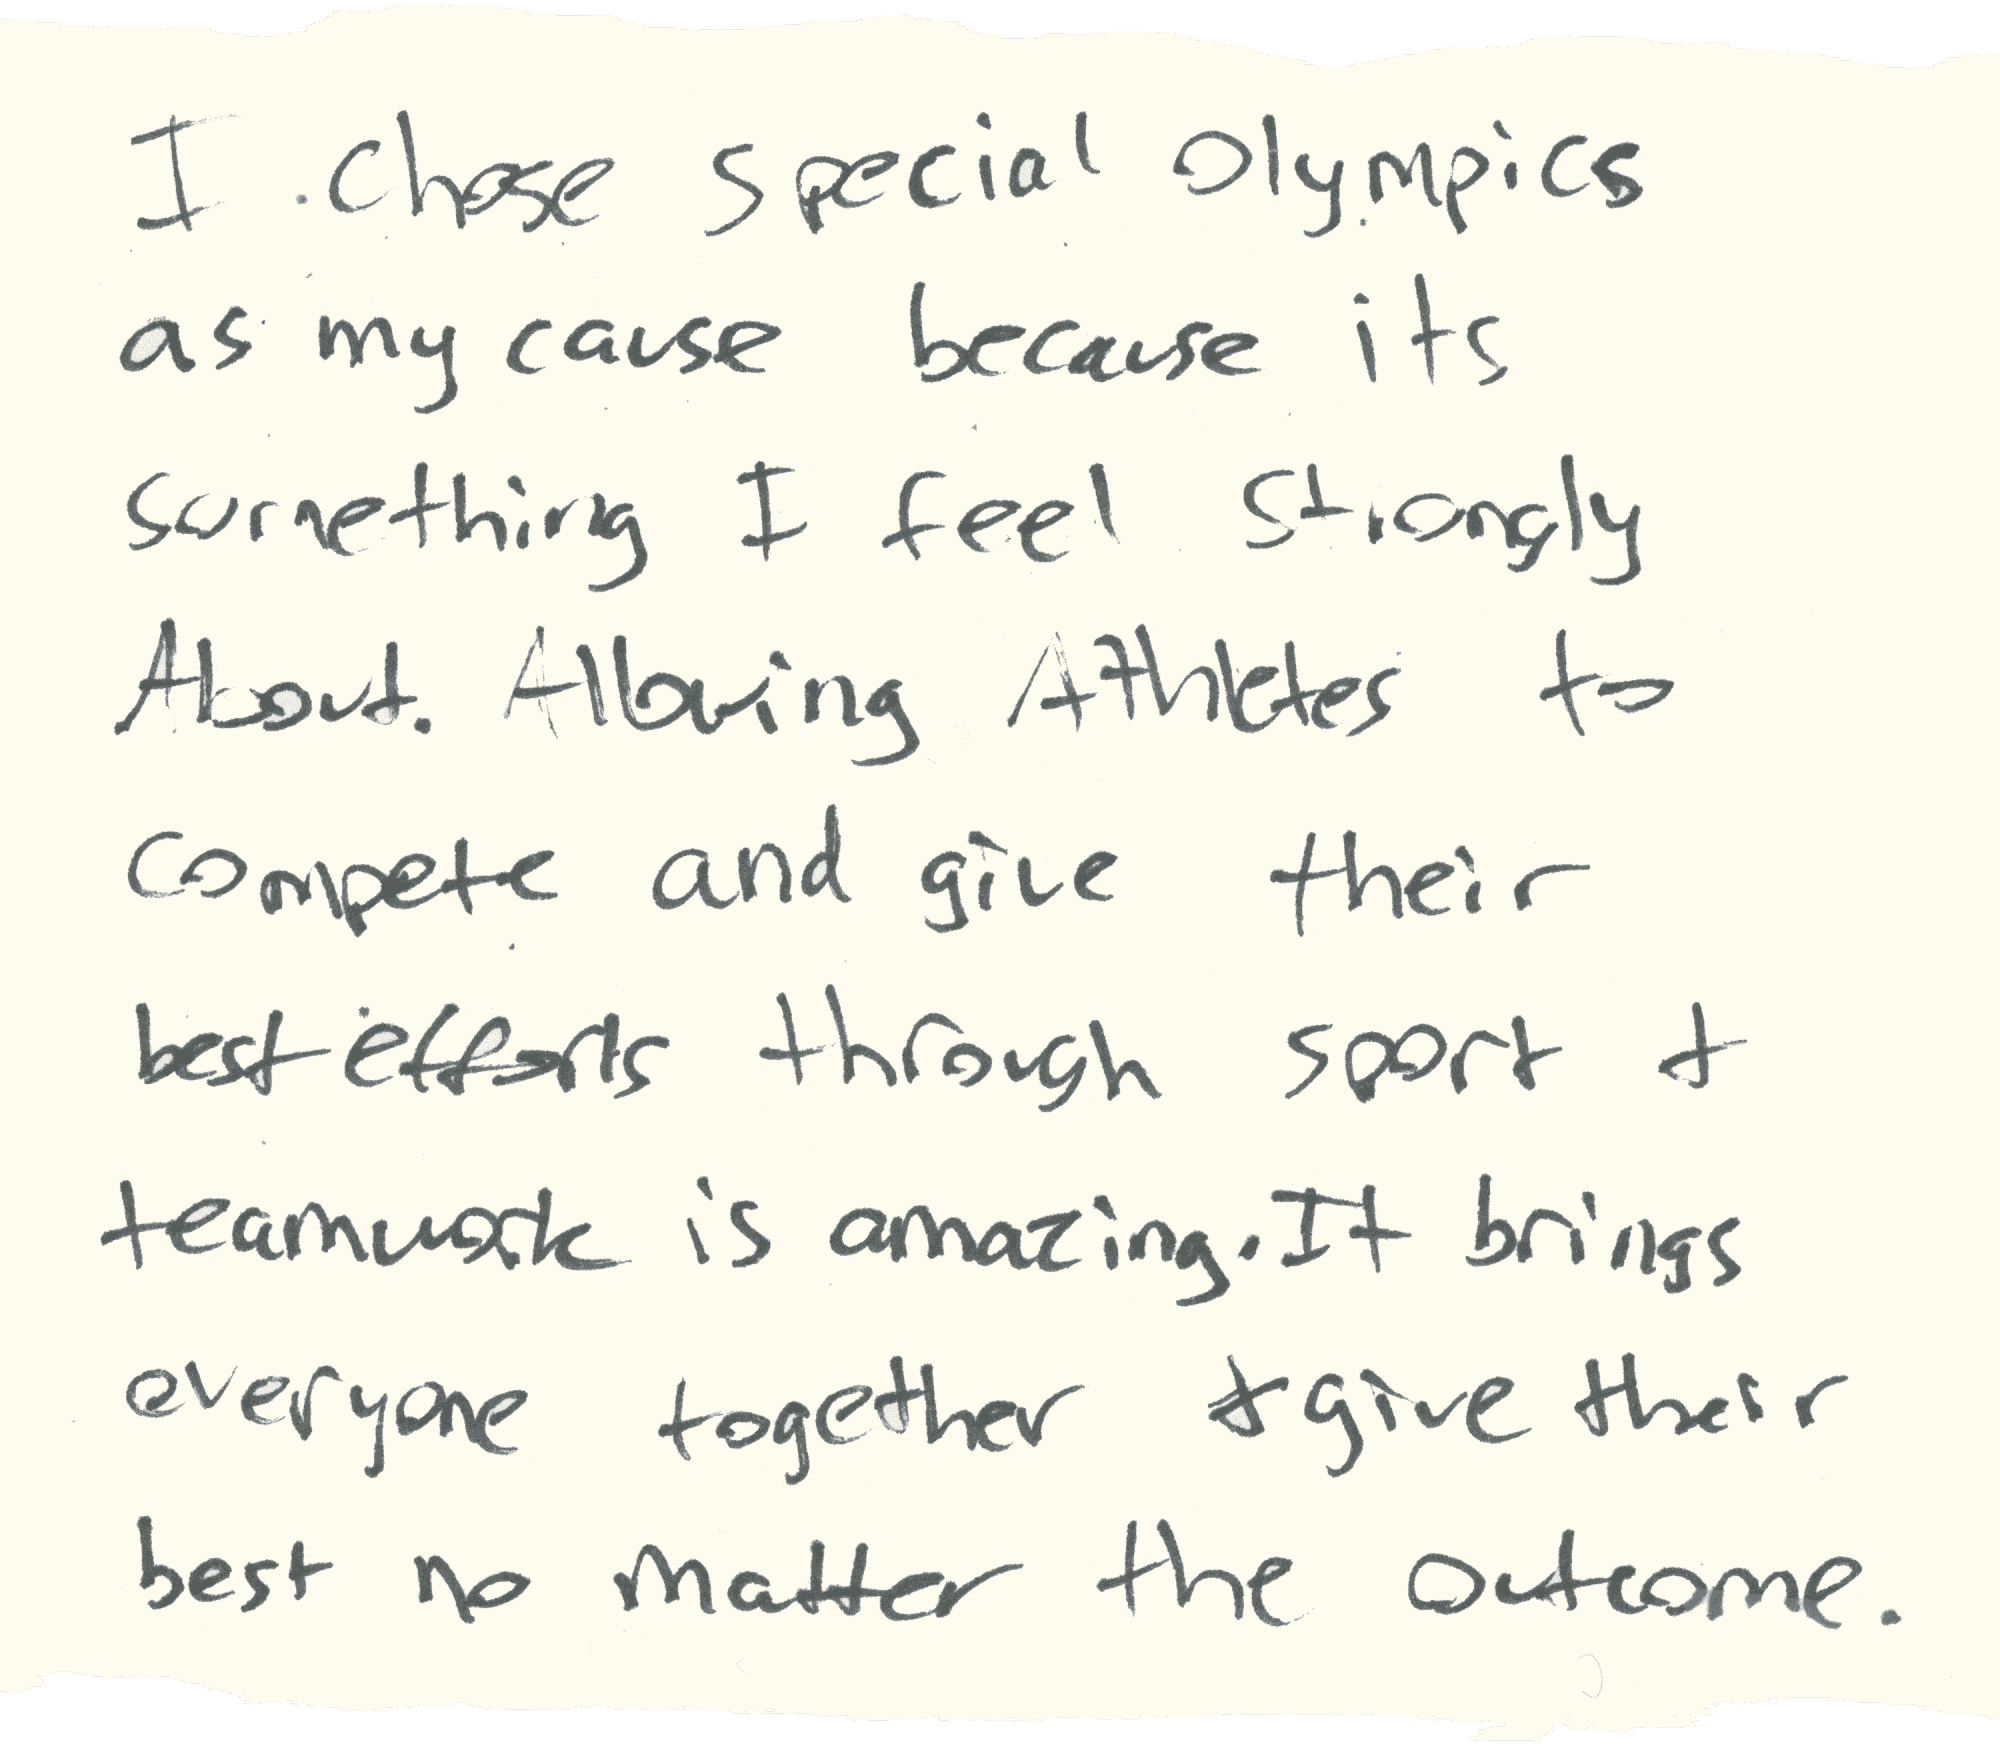 Ich habe mich für die Special Olympics entschieden, weil … Athleten durch Sport + Teamarbeit gegeneinander antreten können … alle zusammenbringt.